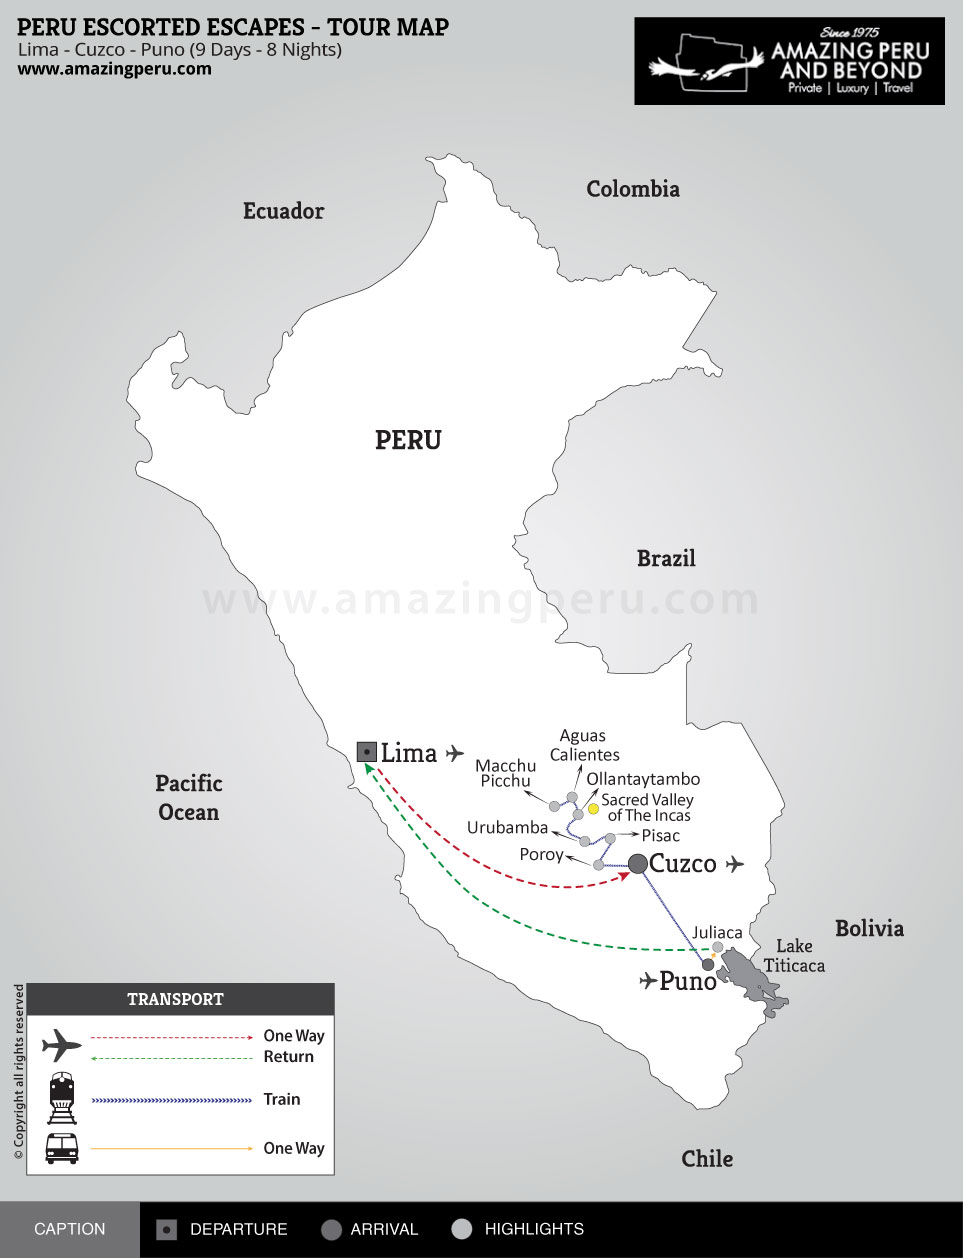 Peru Escorted Escapes Tour 1 - 9 days / 8 nights.